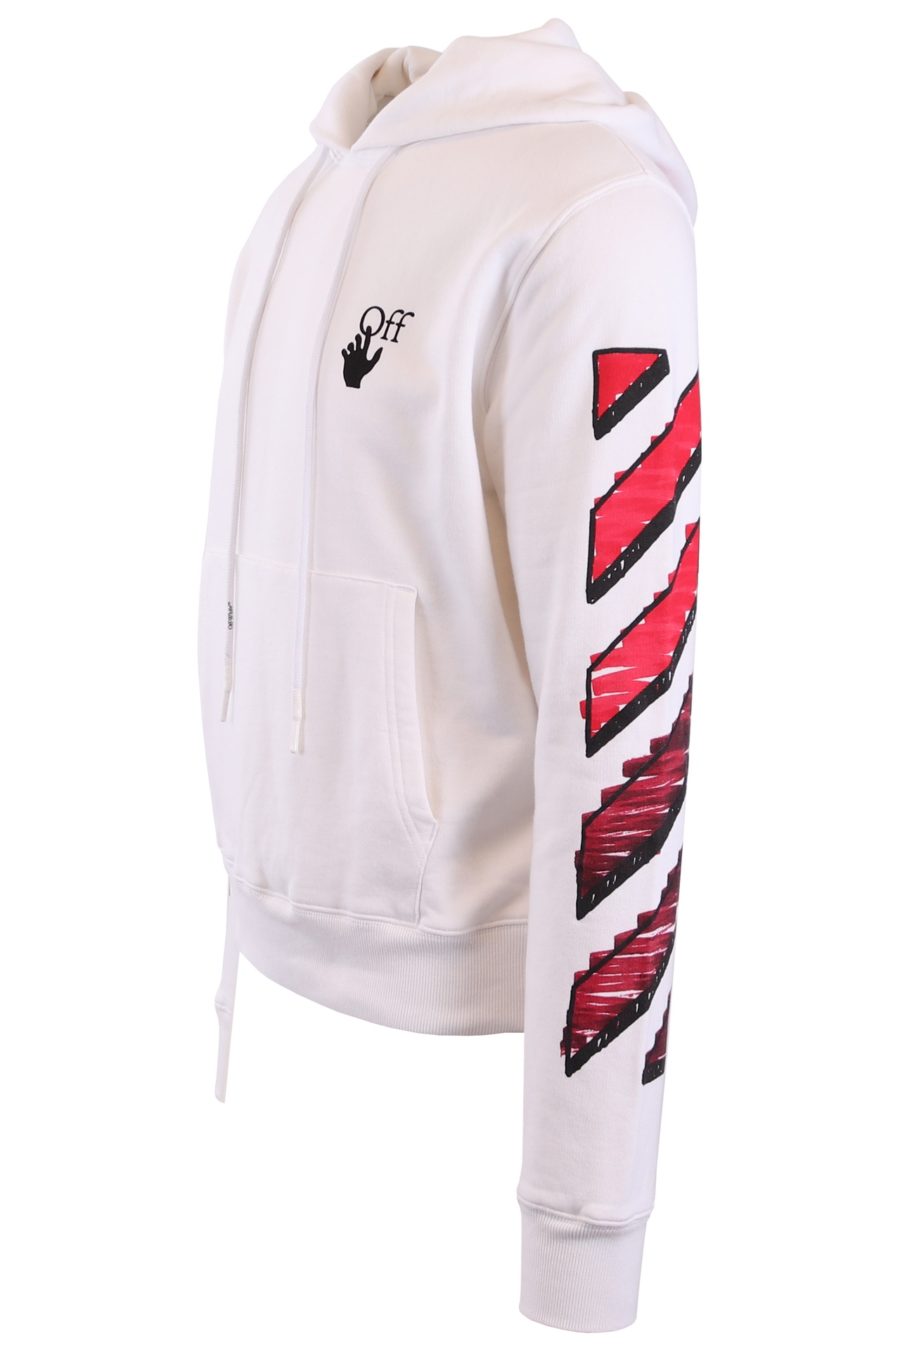 Off-White white hoodie with red arrows - de2d3944d4c5efa18cc09a722339eedc224c34cb